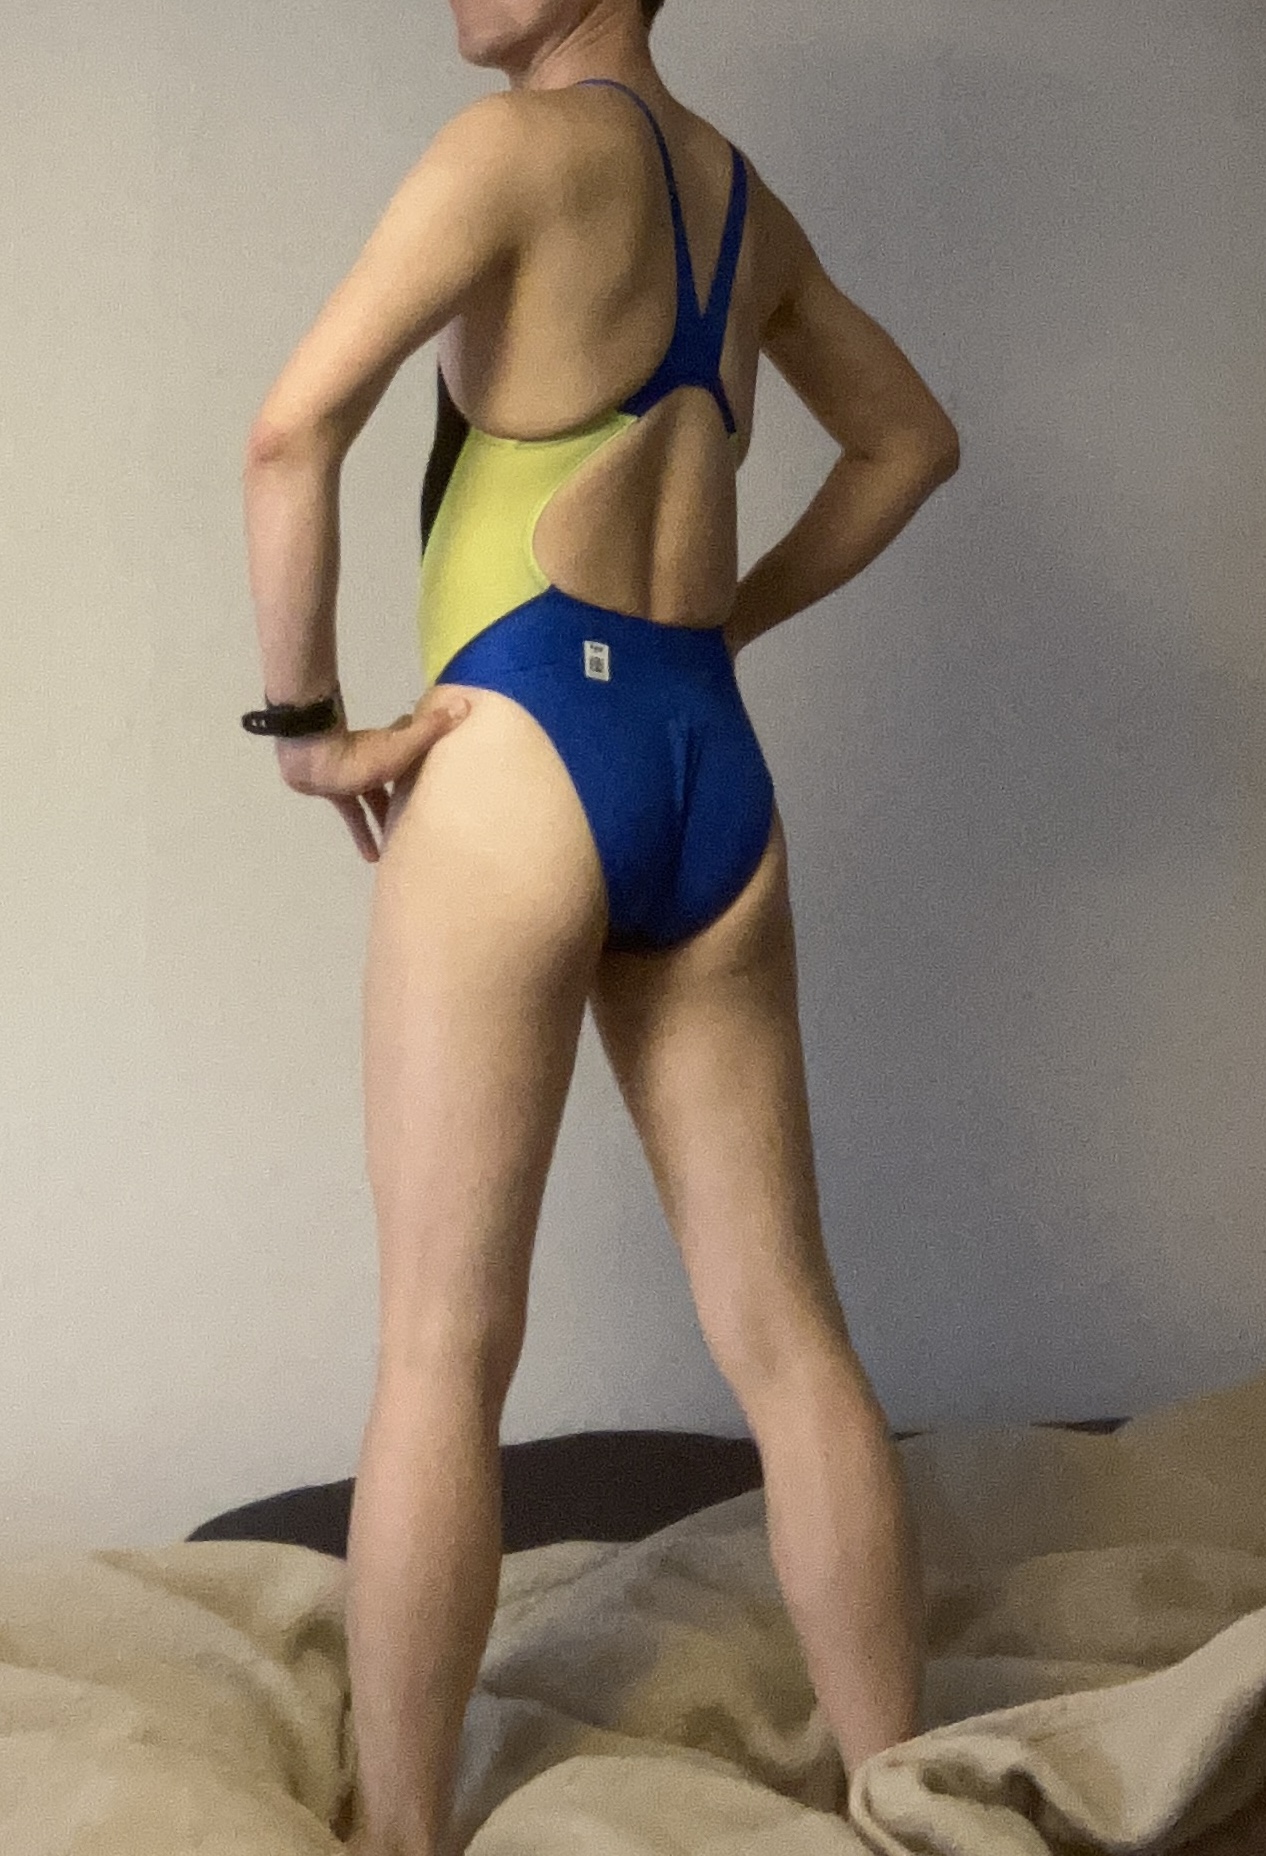 [男性] 女性用競泳水着画像掲示板へ投稿されたKEI様の女性用競泳水着画像 No.17114610310001